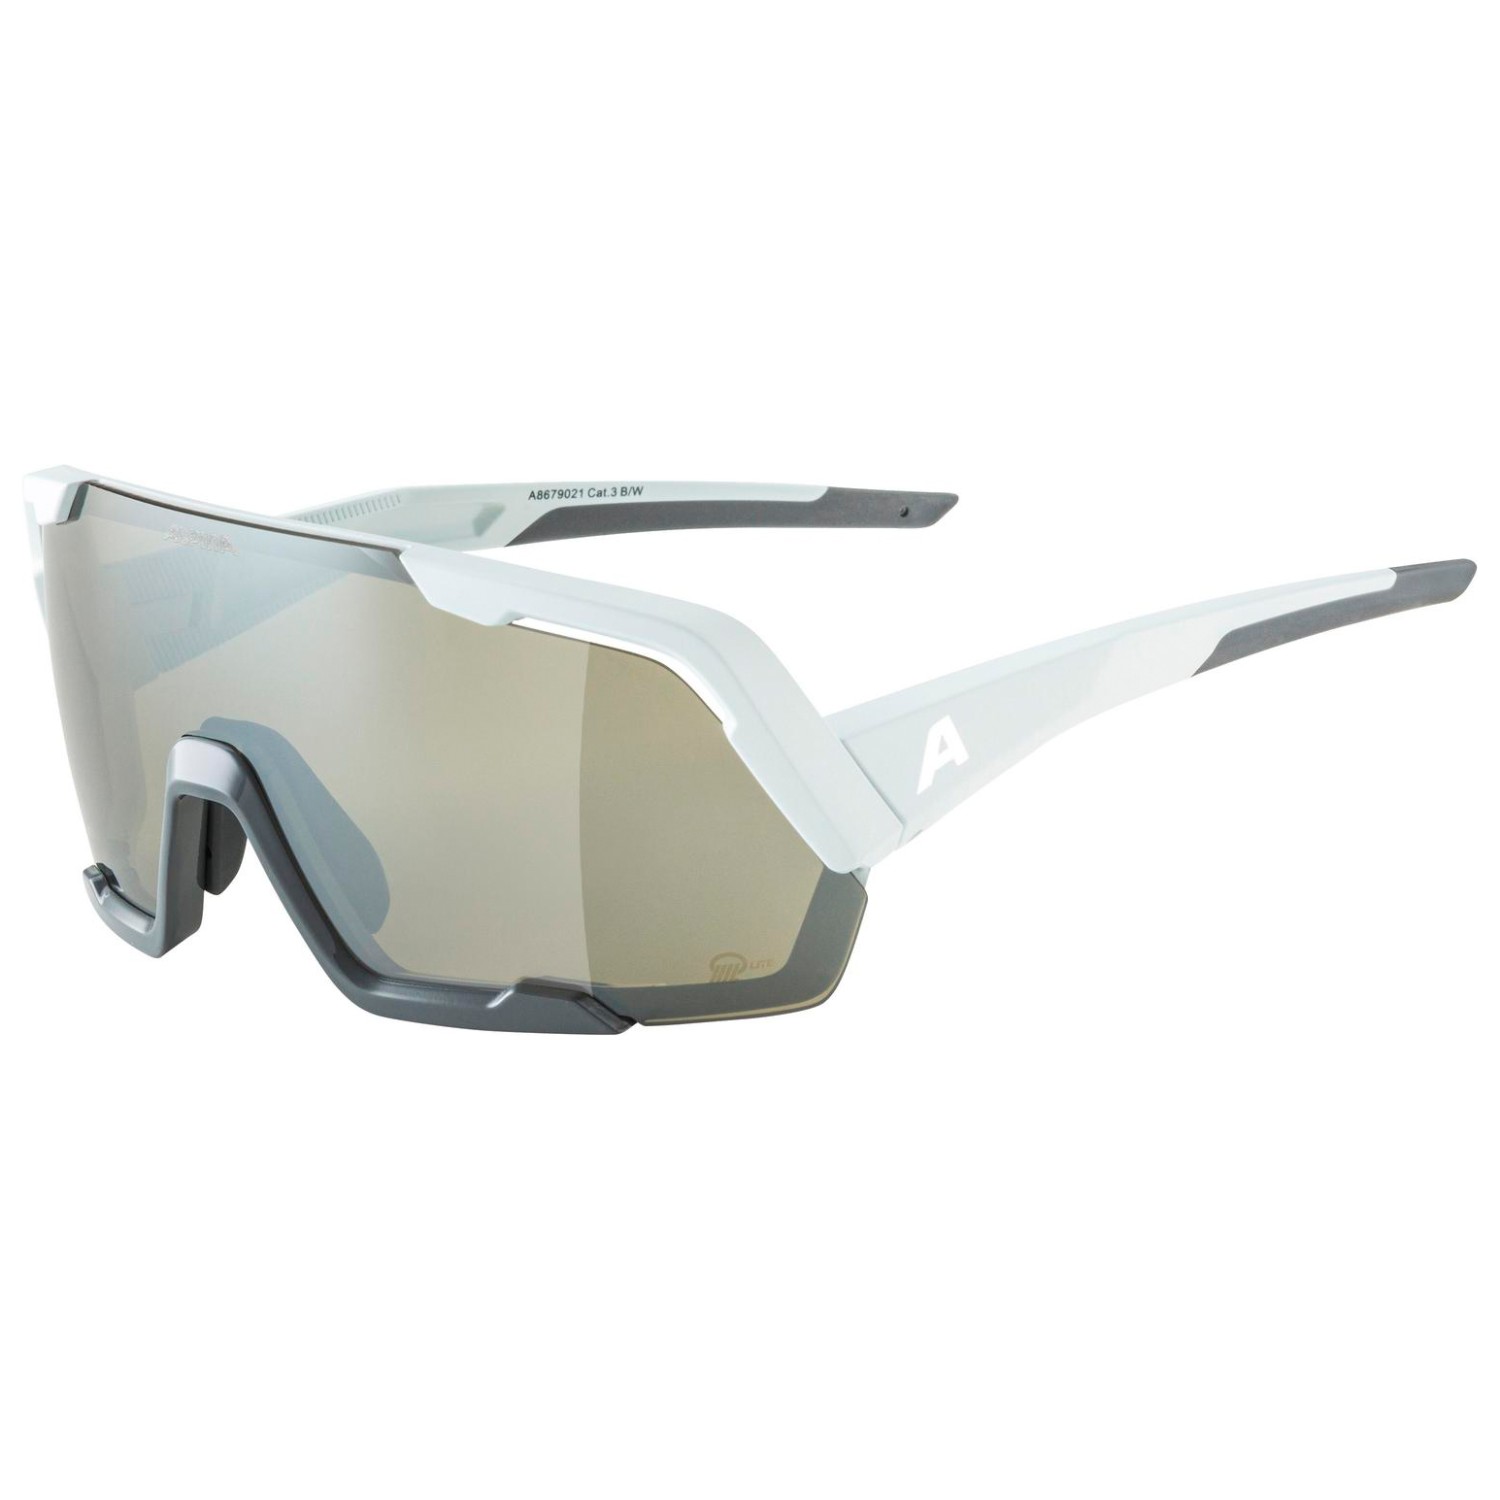 Велосипедные очки Alpina Rocket Q Lite Mirror Cat 3, цвет Smoke/Grey Matt